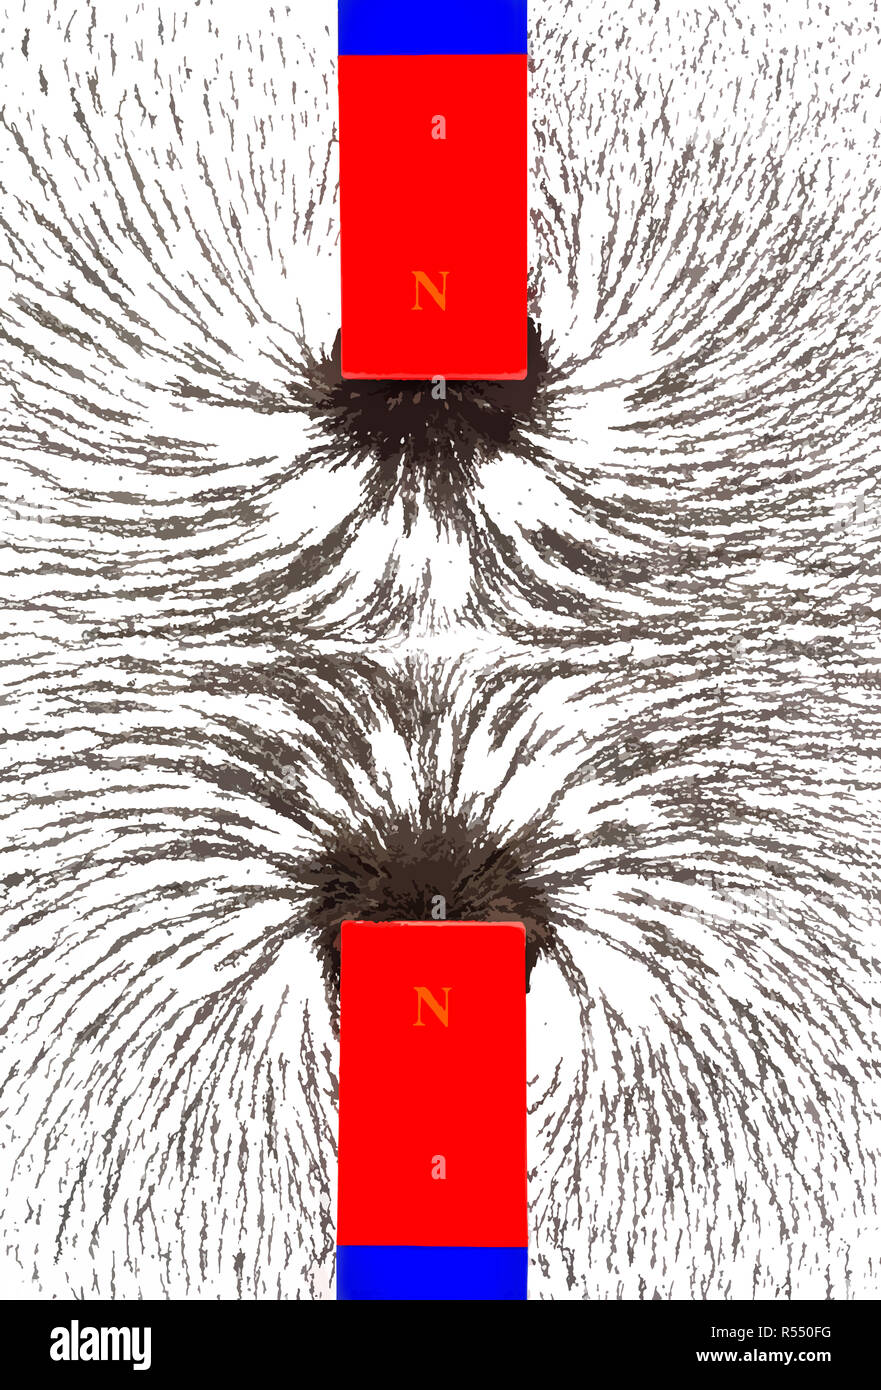 La repulsione magnetica, illustrazione. La limatura di ferro mostrano l'interazione dei campi magnetici quando simile poli di due bar magneti vengono avvicinati. Foto Stock